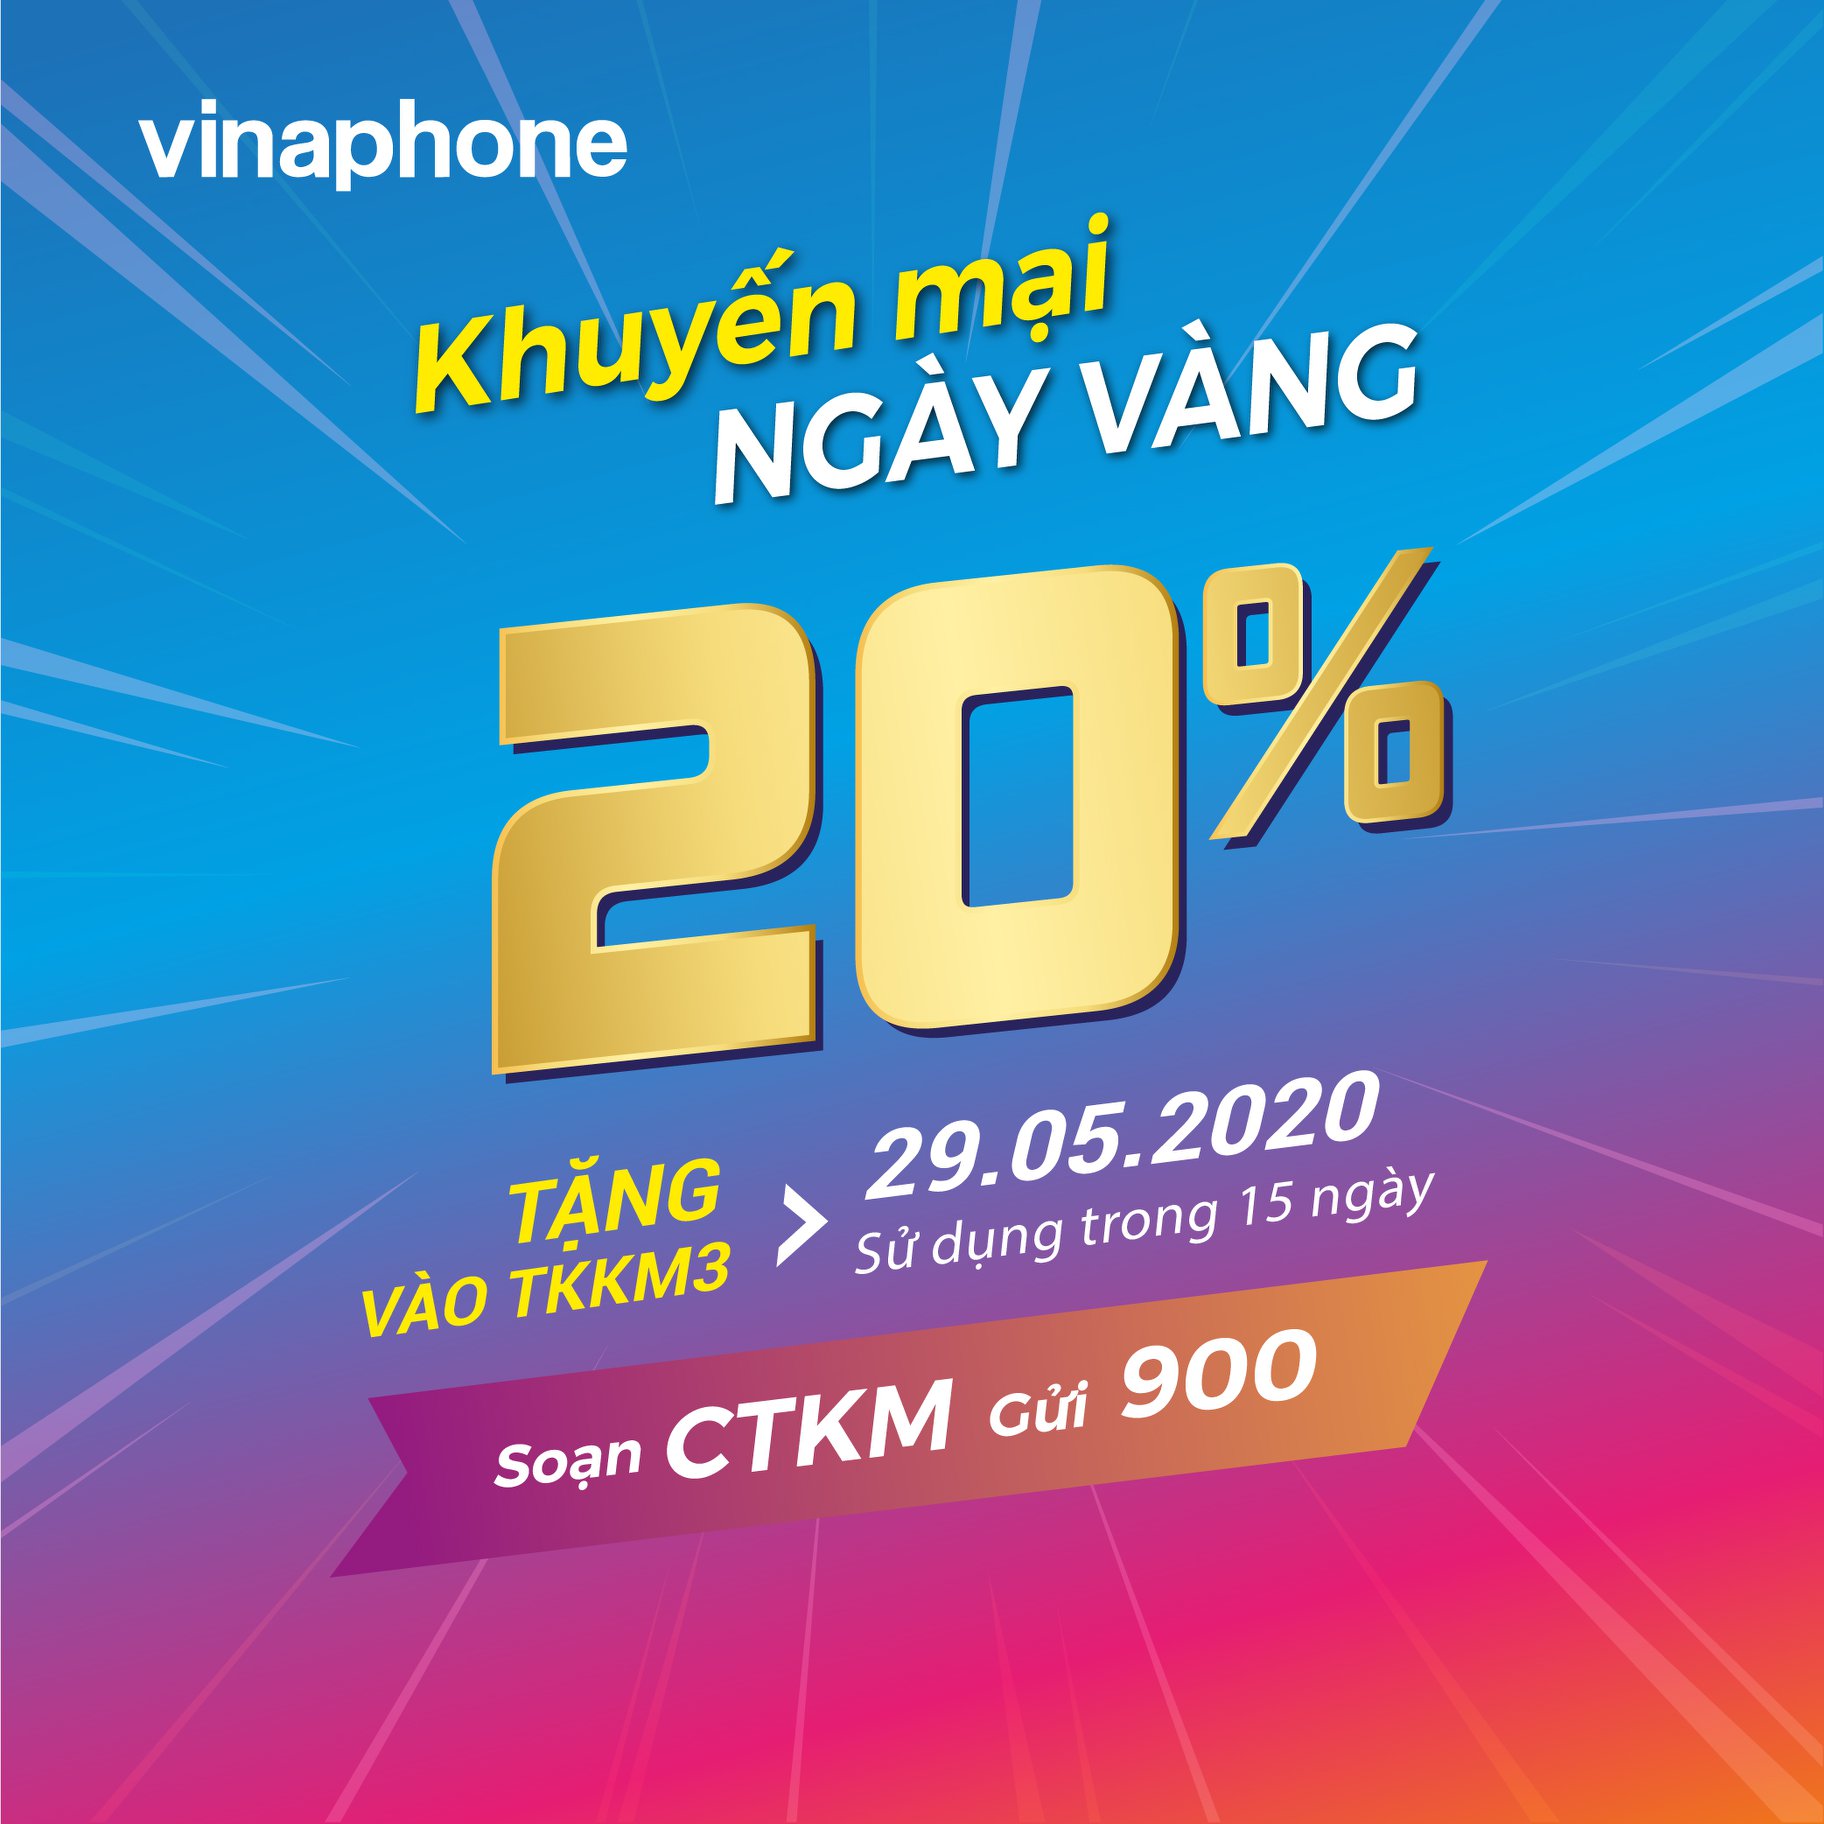 Vinaphone khuyến mãi ngày vàng 29/5/2020 tặng 20% giá trị thẻ nạp